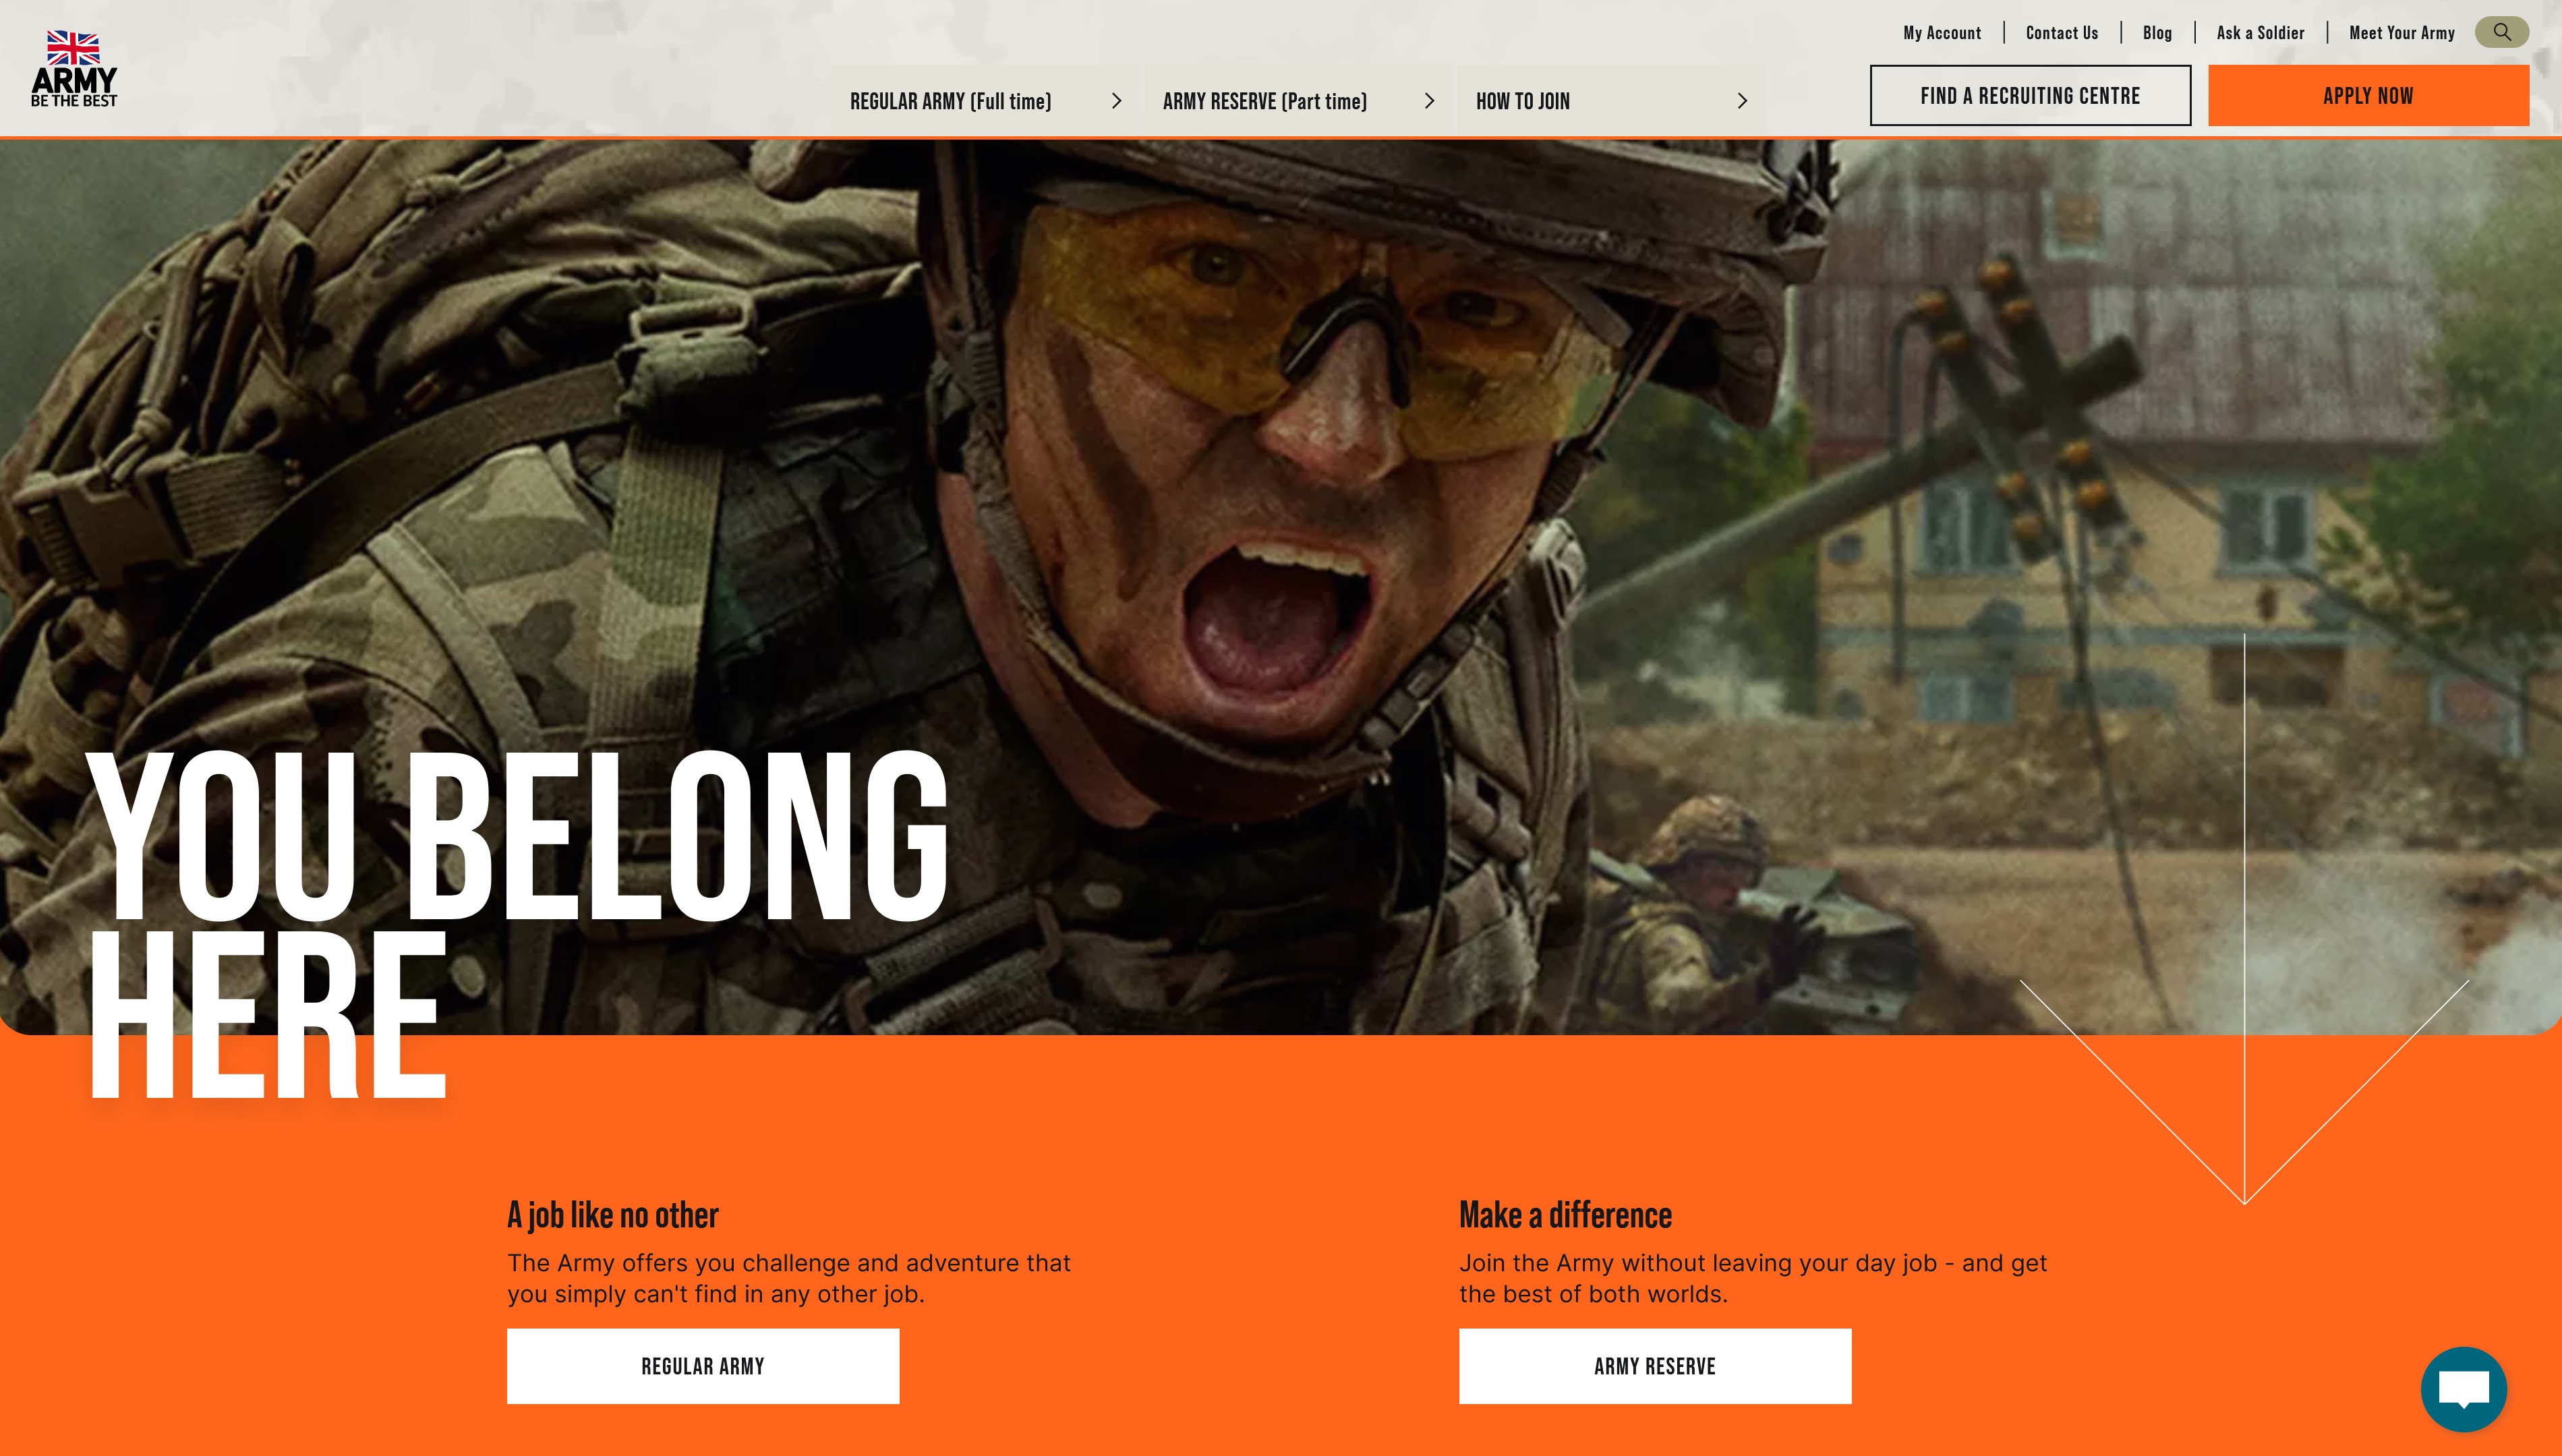 Encabezado del sitio web de empleo y reclutamiento del ejército británico: imagen de un soldado y las palabras 